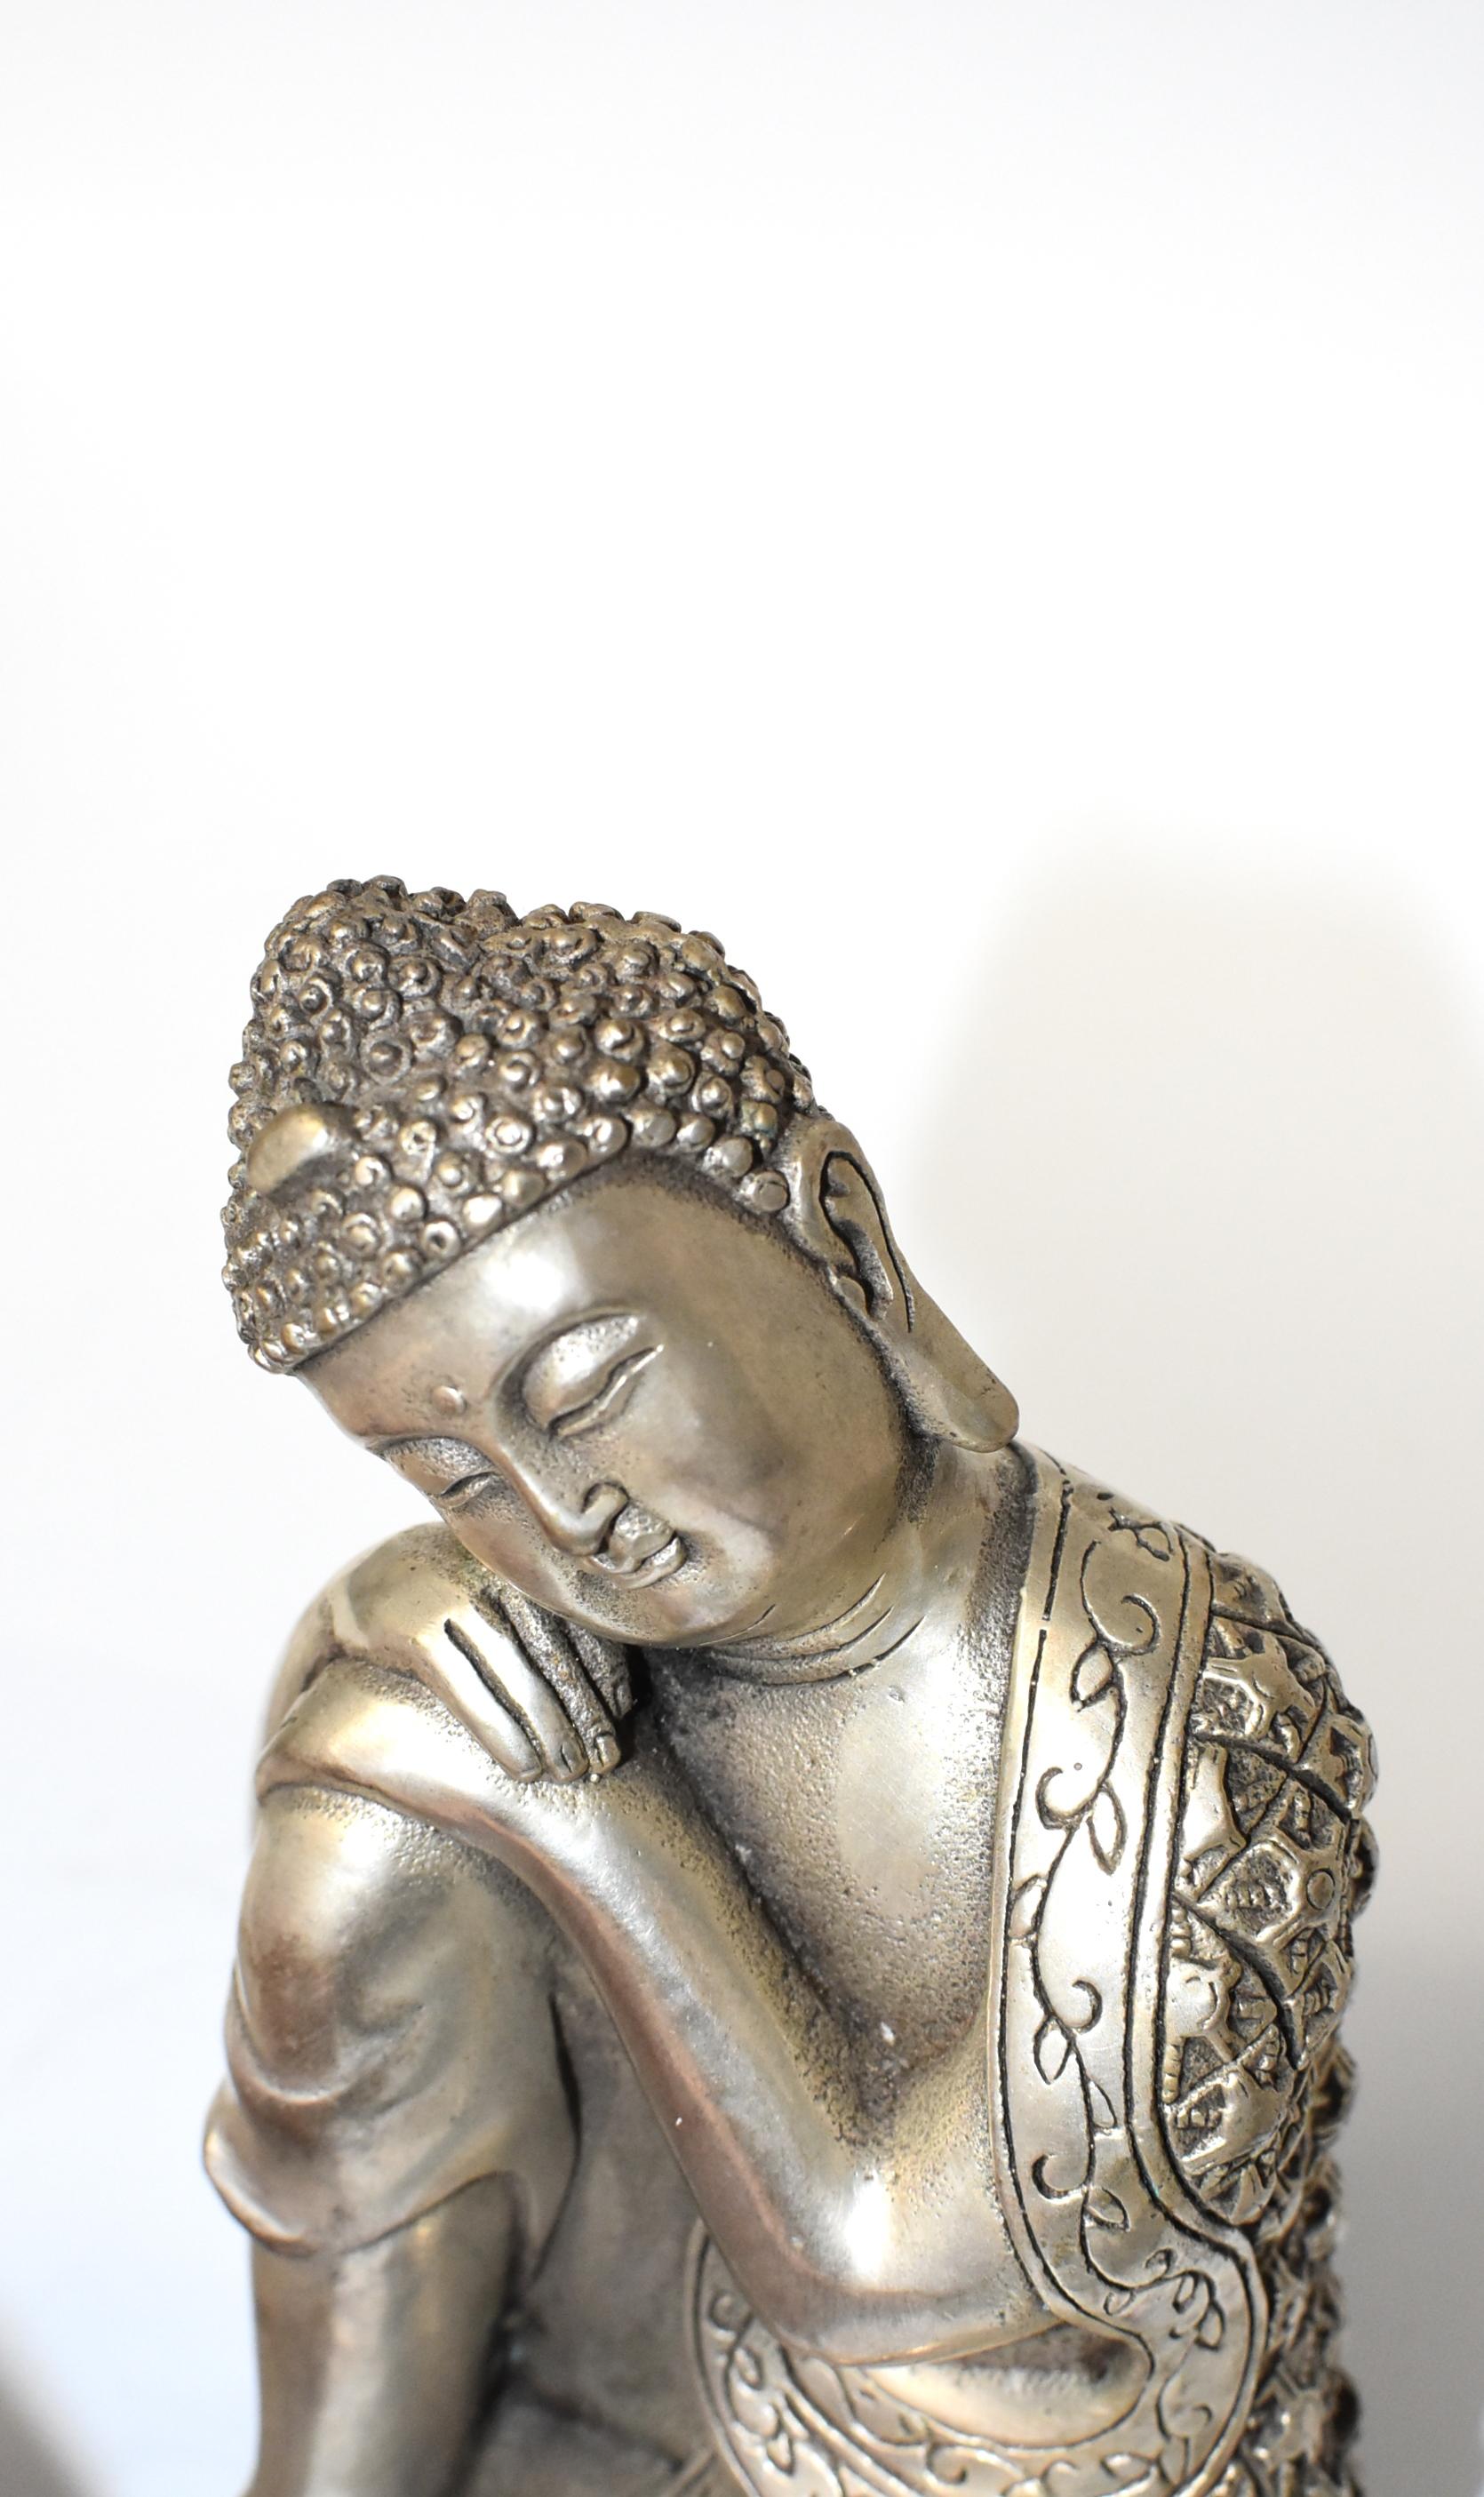 Silvered Brass Buddha Statue, a Thinking Buddha 8